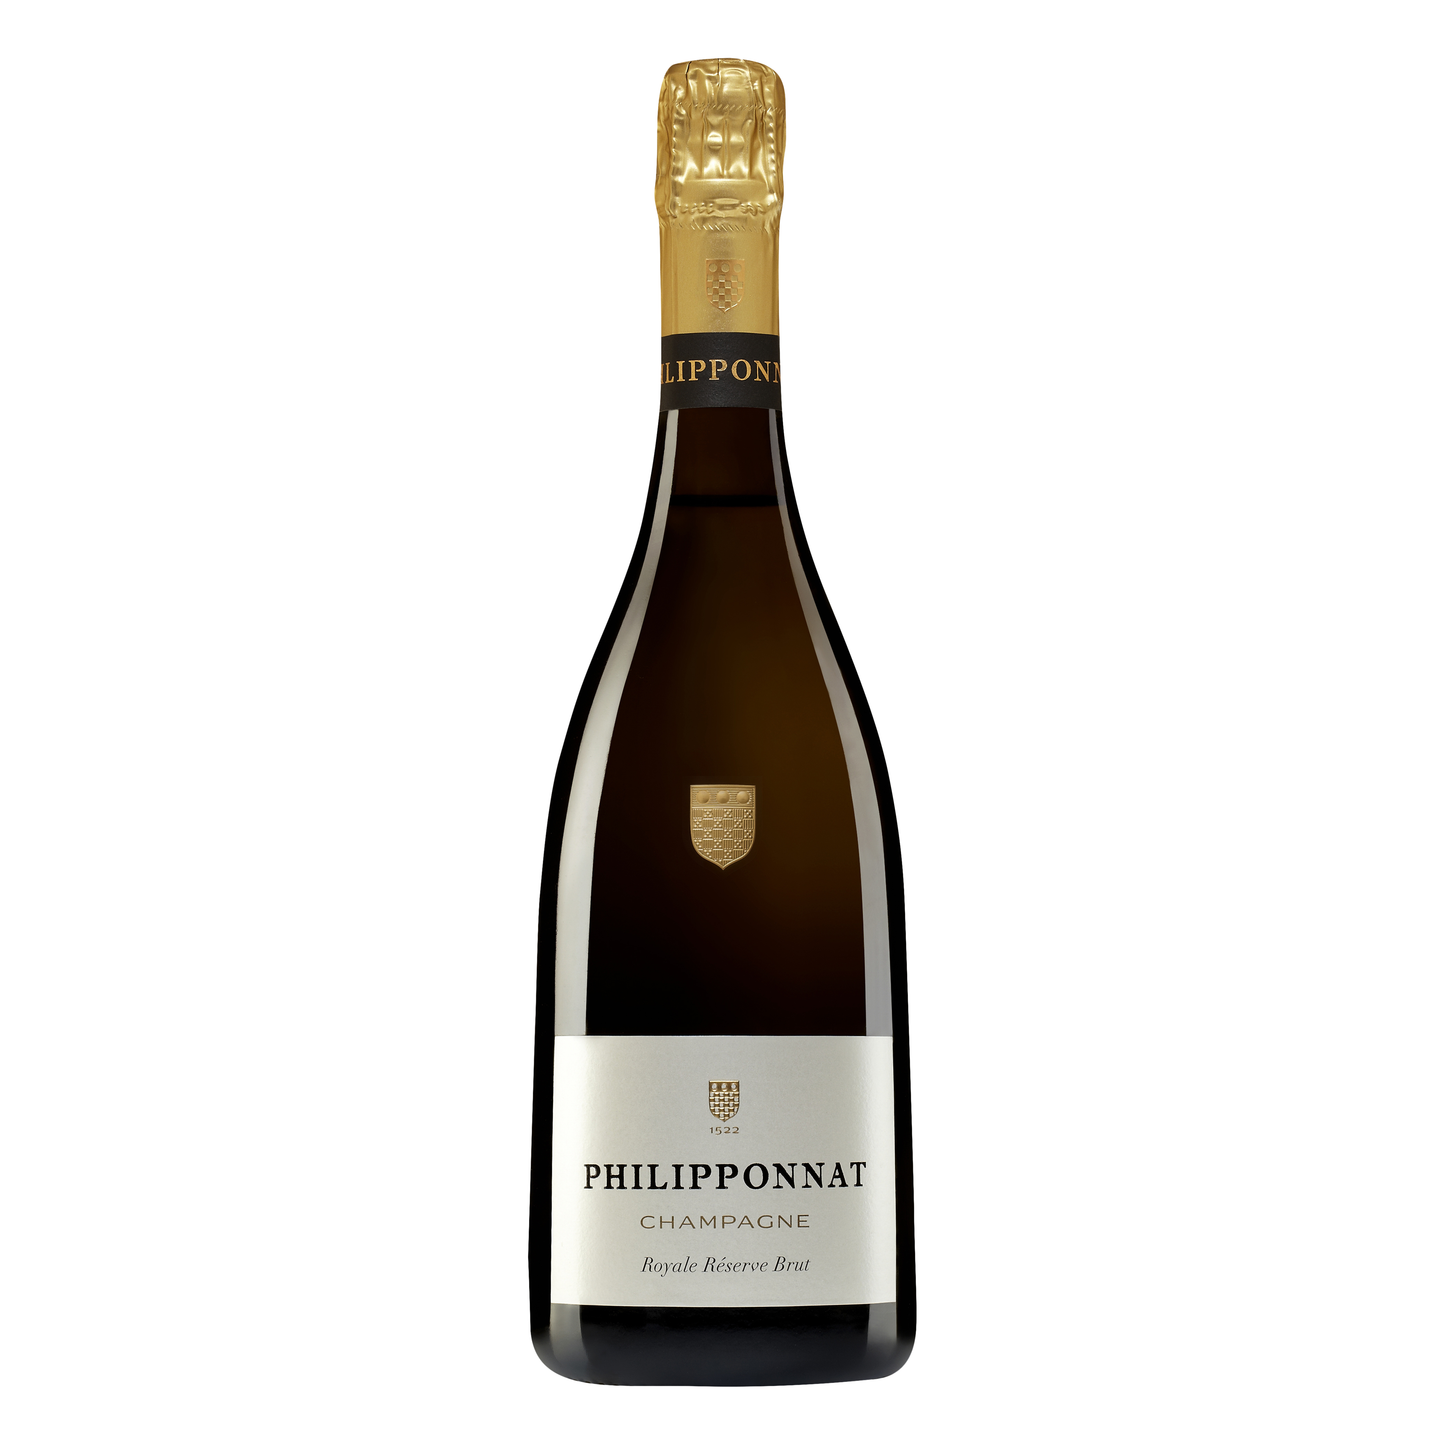 Philipponnat - Champagne Royale Réserve Brut